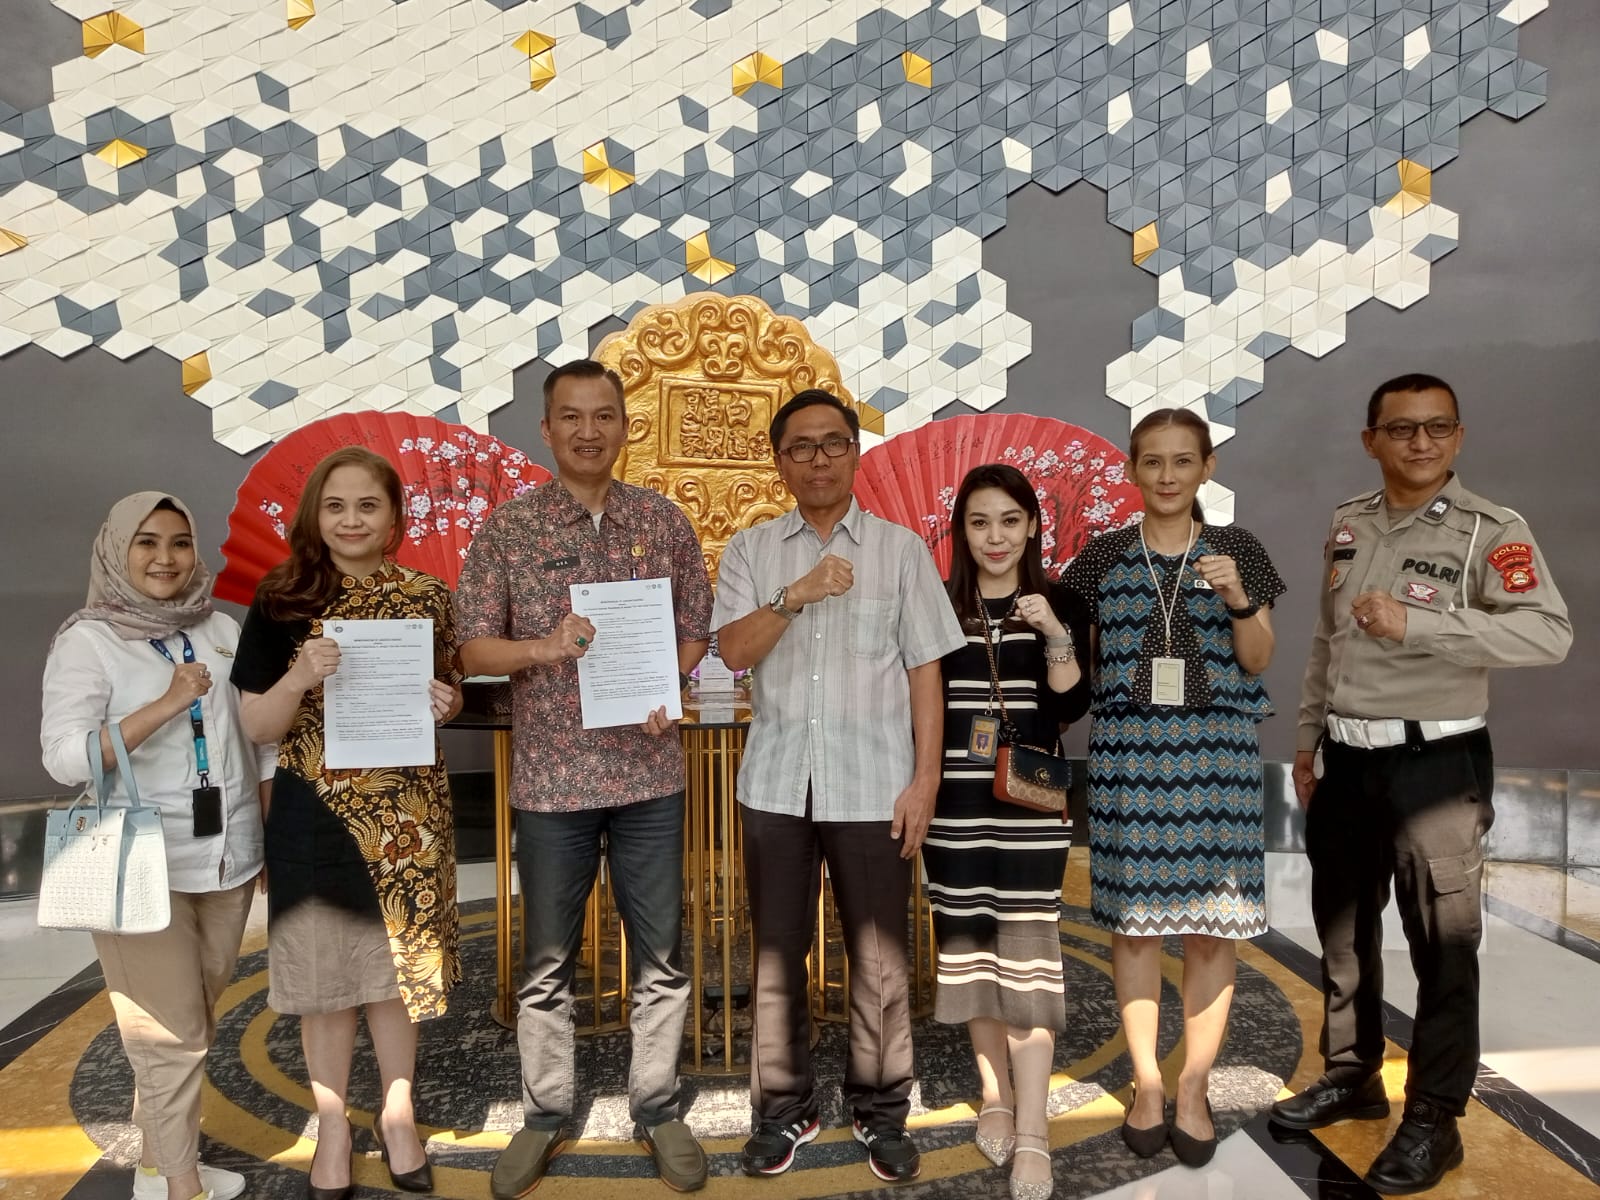 Penandatanganan Bapenda Sumsel Bersama UPTB Samsat Palembang IV Dan Jasa Raharja MoU Dengan Hotel The Alts Palembang